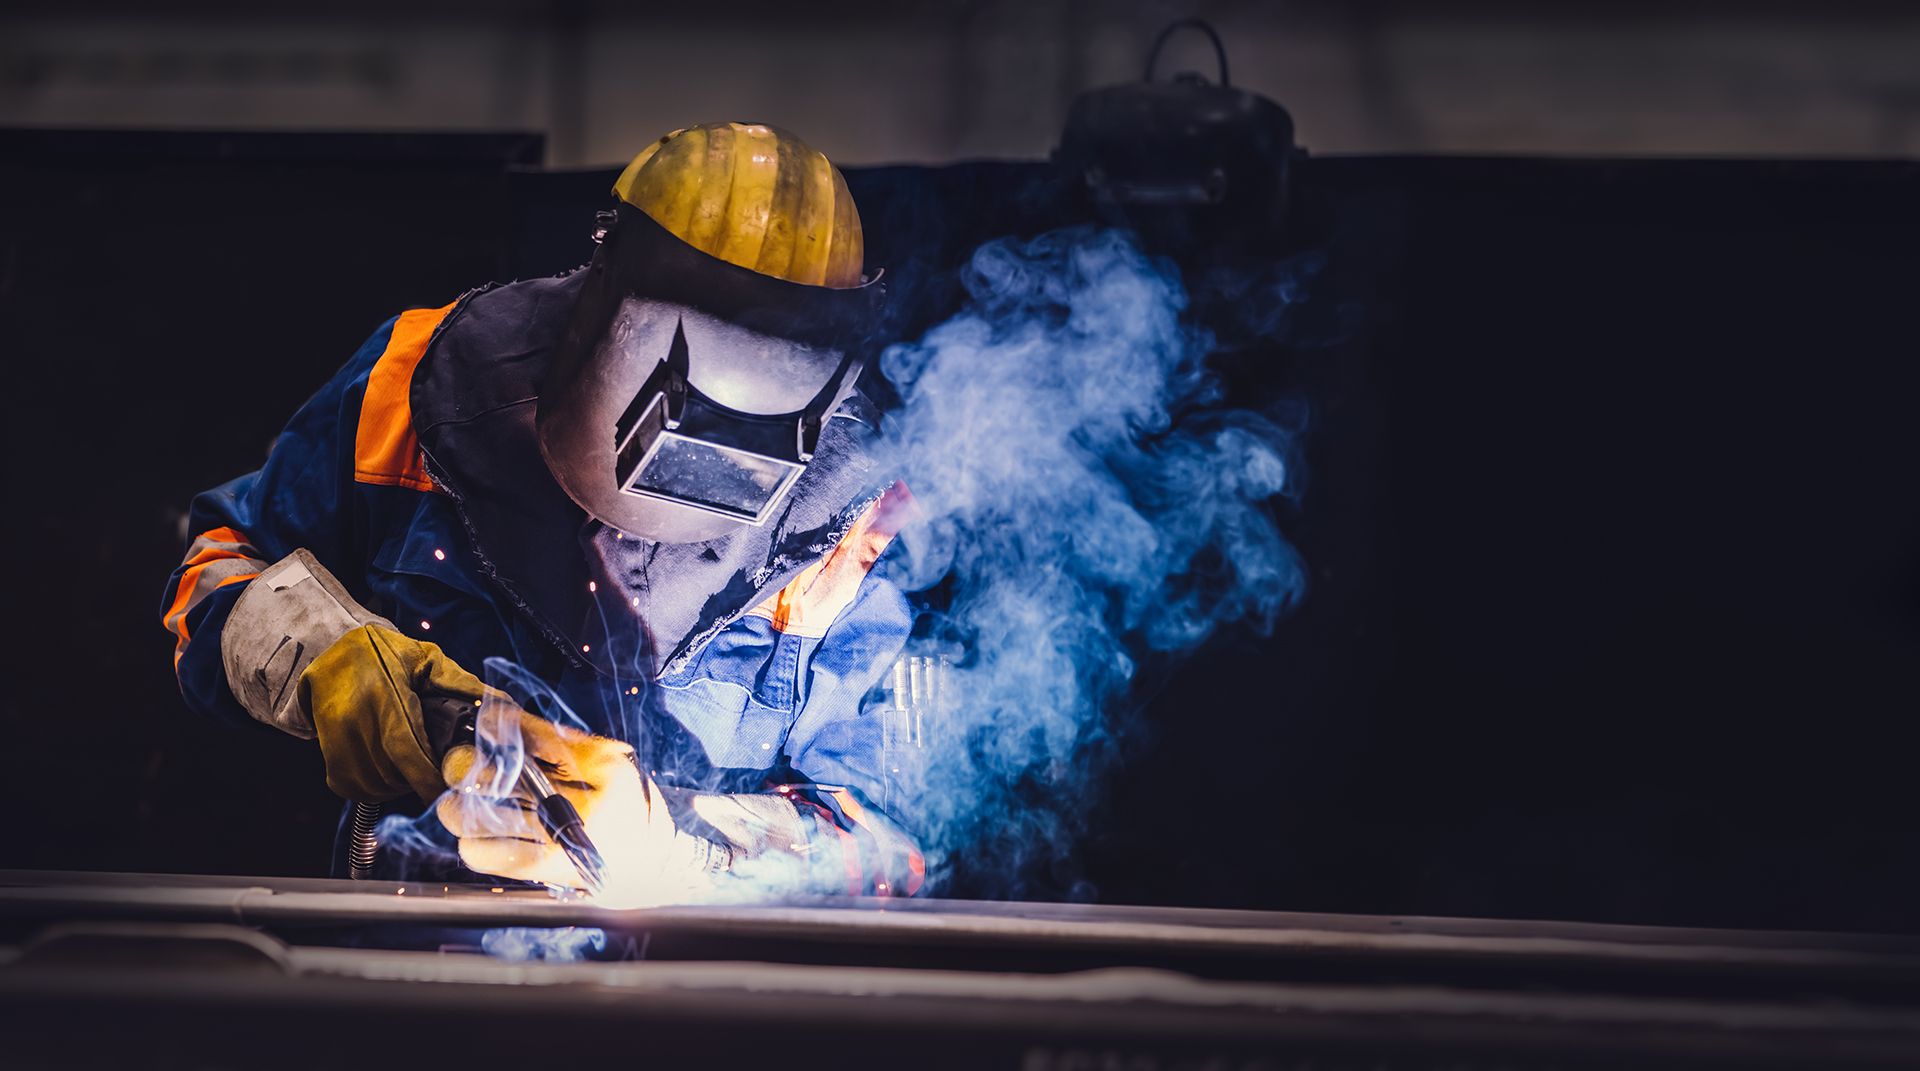 Worker welding in a factory. Heavy industry, welder work